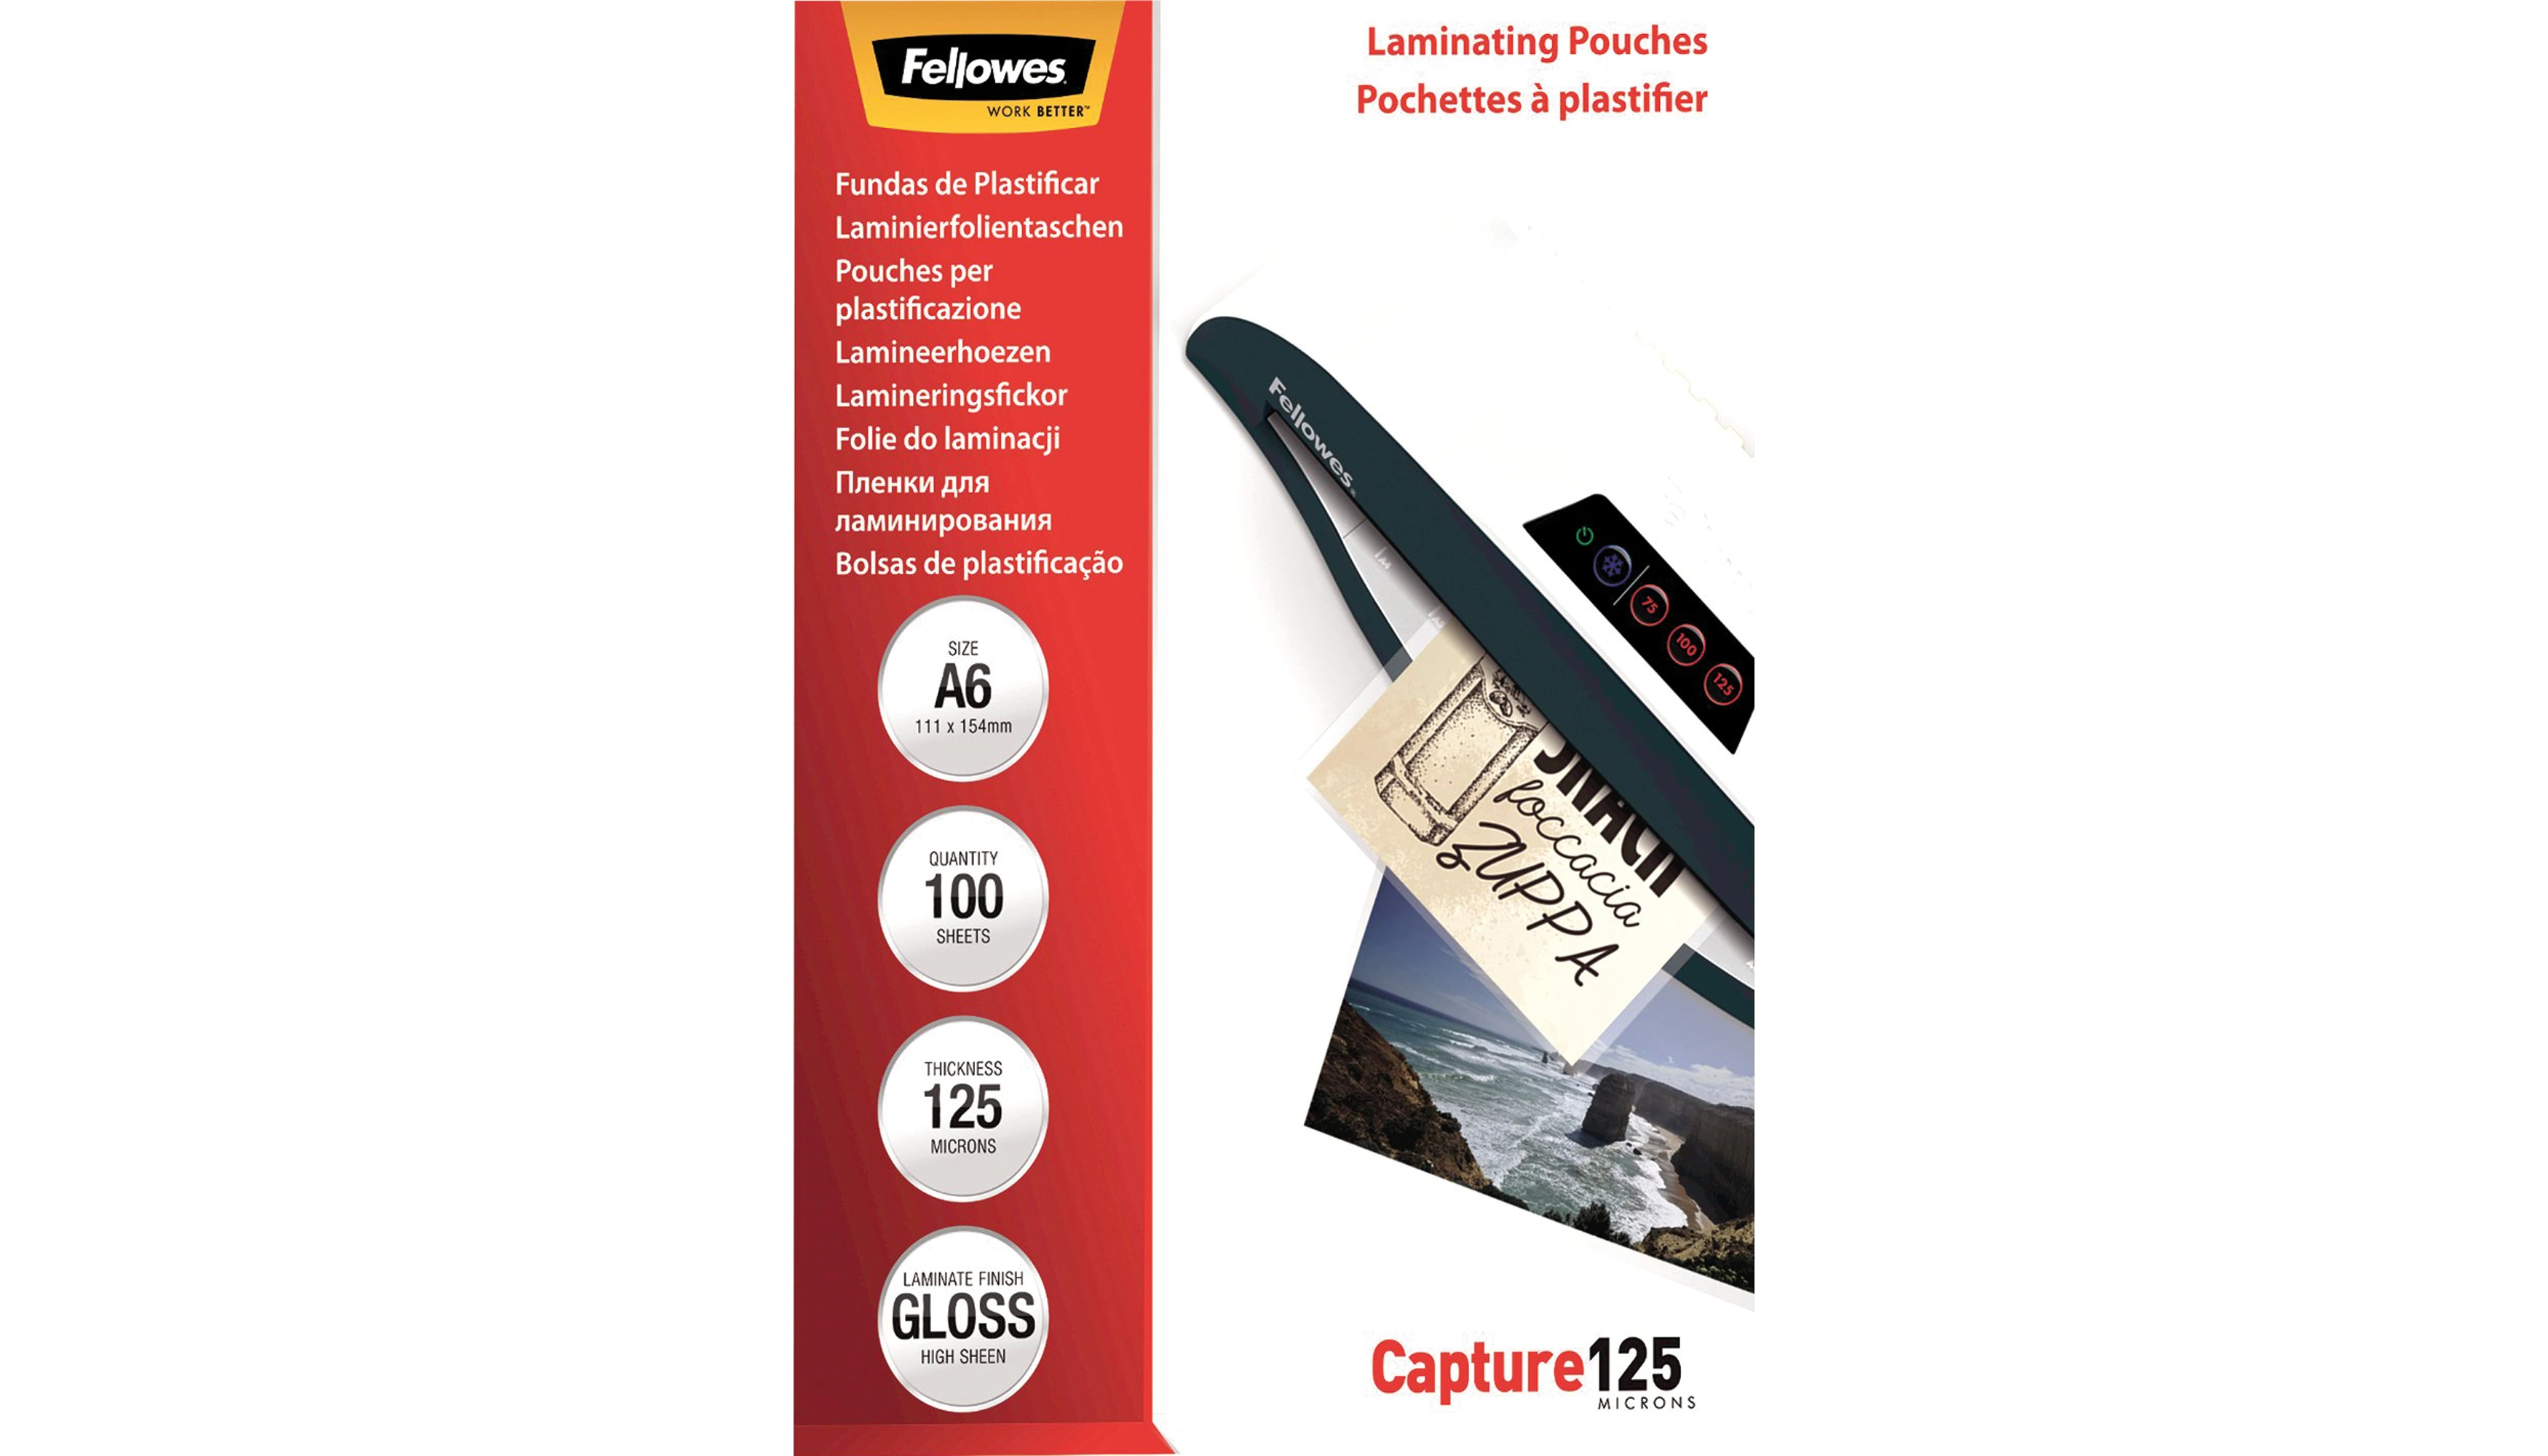 FELLOWS® Laminierfolie Capture 125 DIN A6 125 micron transparent glänzend 100 Stück/Pack 